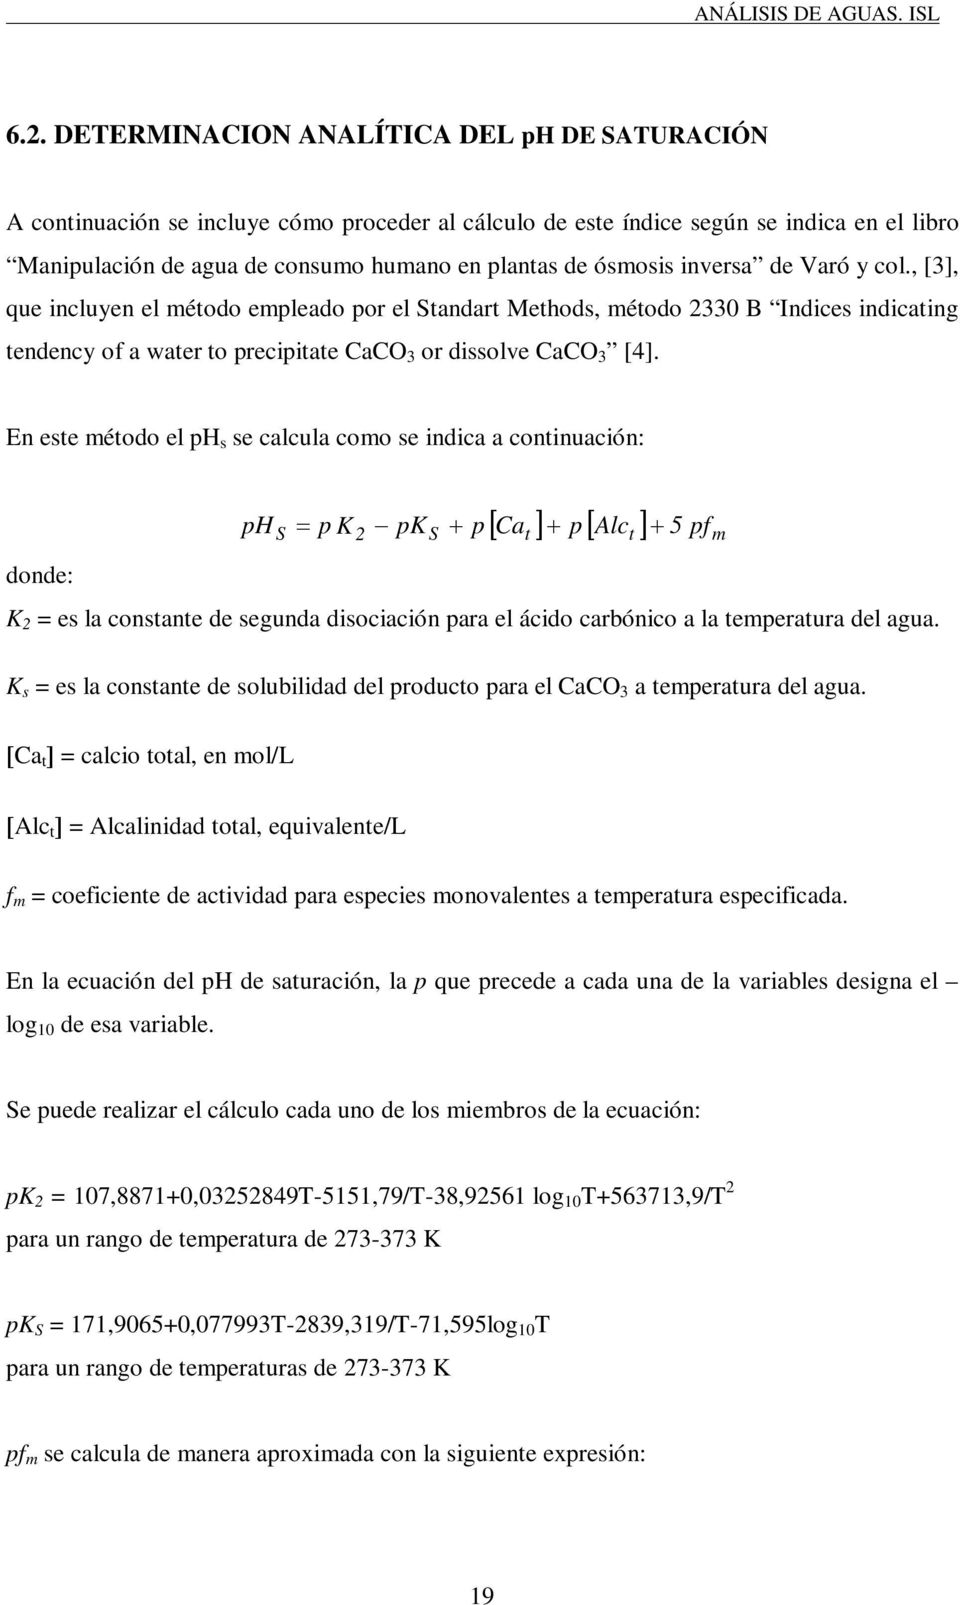 En este método el ph s se calcula como se indica a continuación: ph S p K 2 pk S p Ca t p Alct 5 pfm donde: K 2 = es la constante de segunda disociación para el ácido carbónico a la temperatura del